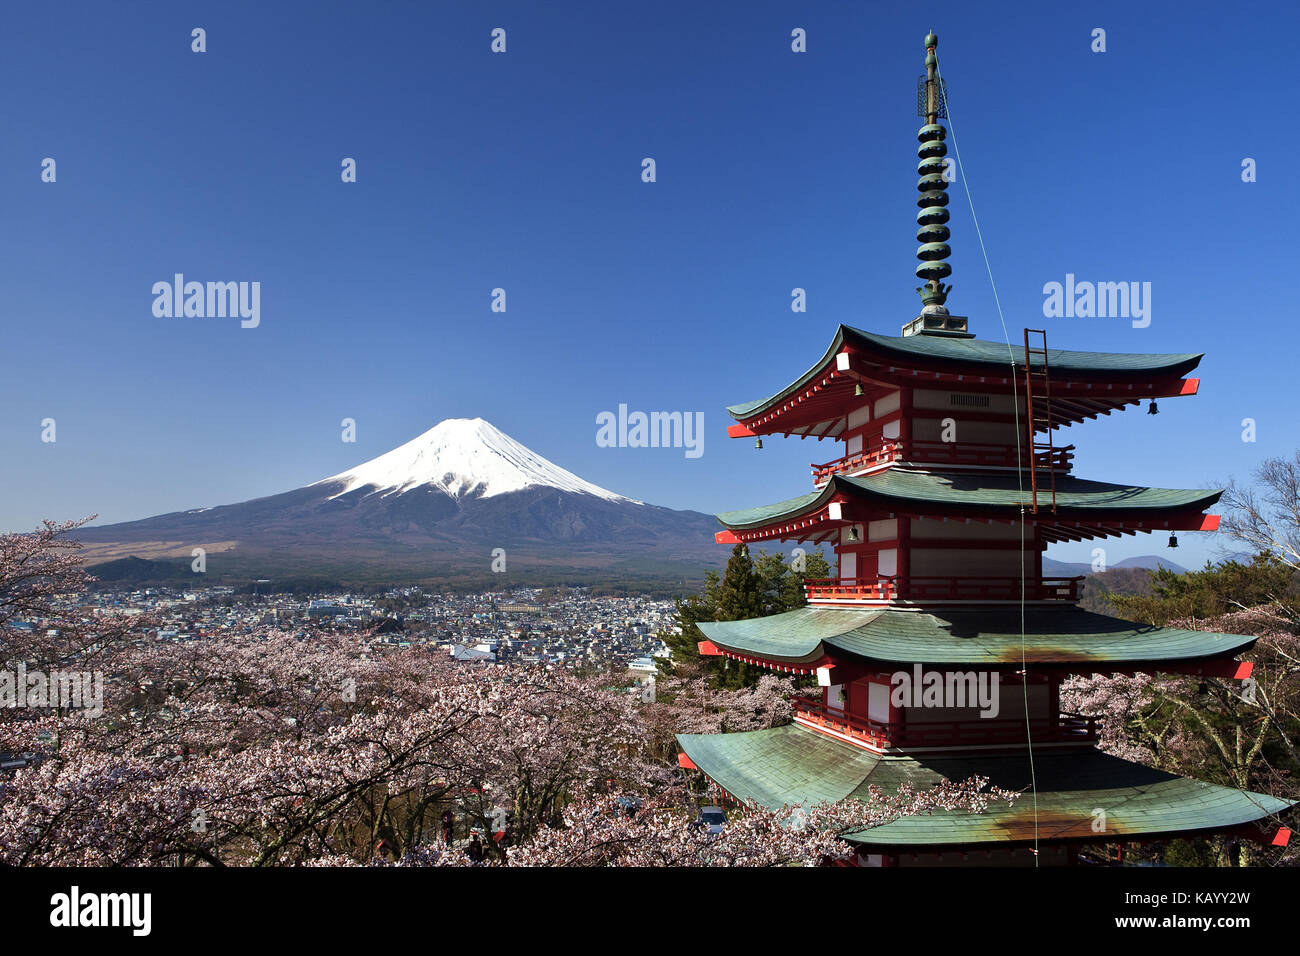 Le Japon, pagode dans le sanctuaire sengen arakura, fleurs de cerisier et le mont Fuji, Banque D'Images